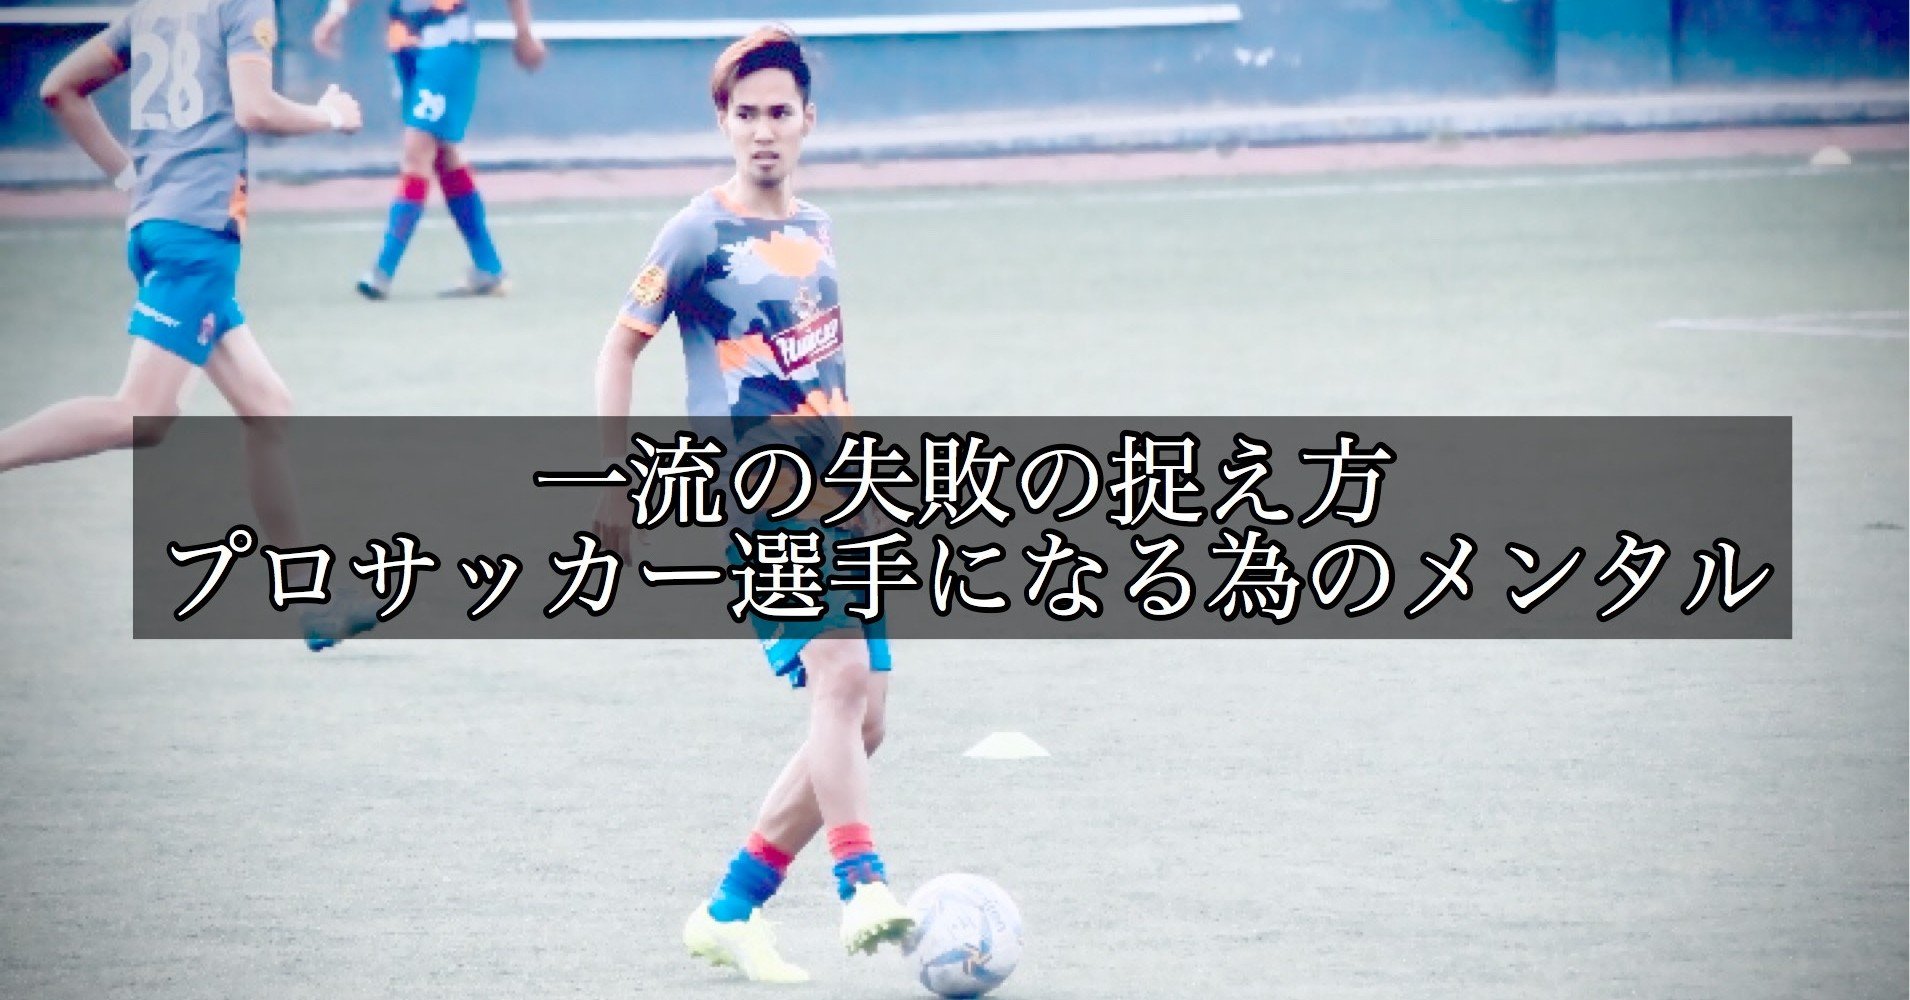 一流の失敗の捉え方 プロサッカー選手になる為のメンタル 大津一貴 Kazutaka Otsu Note